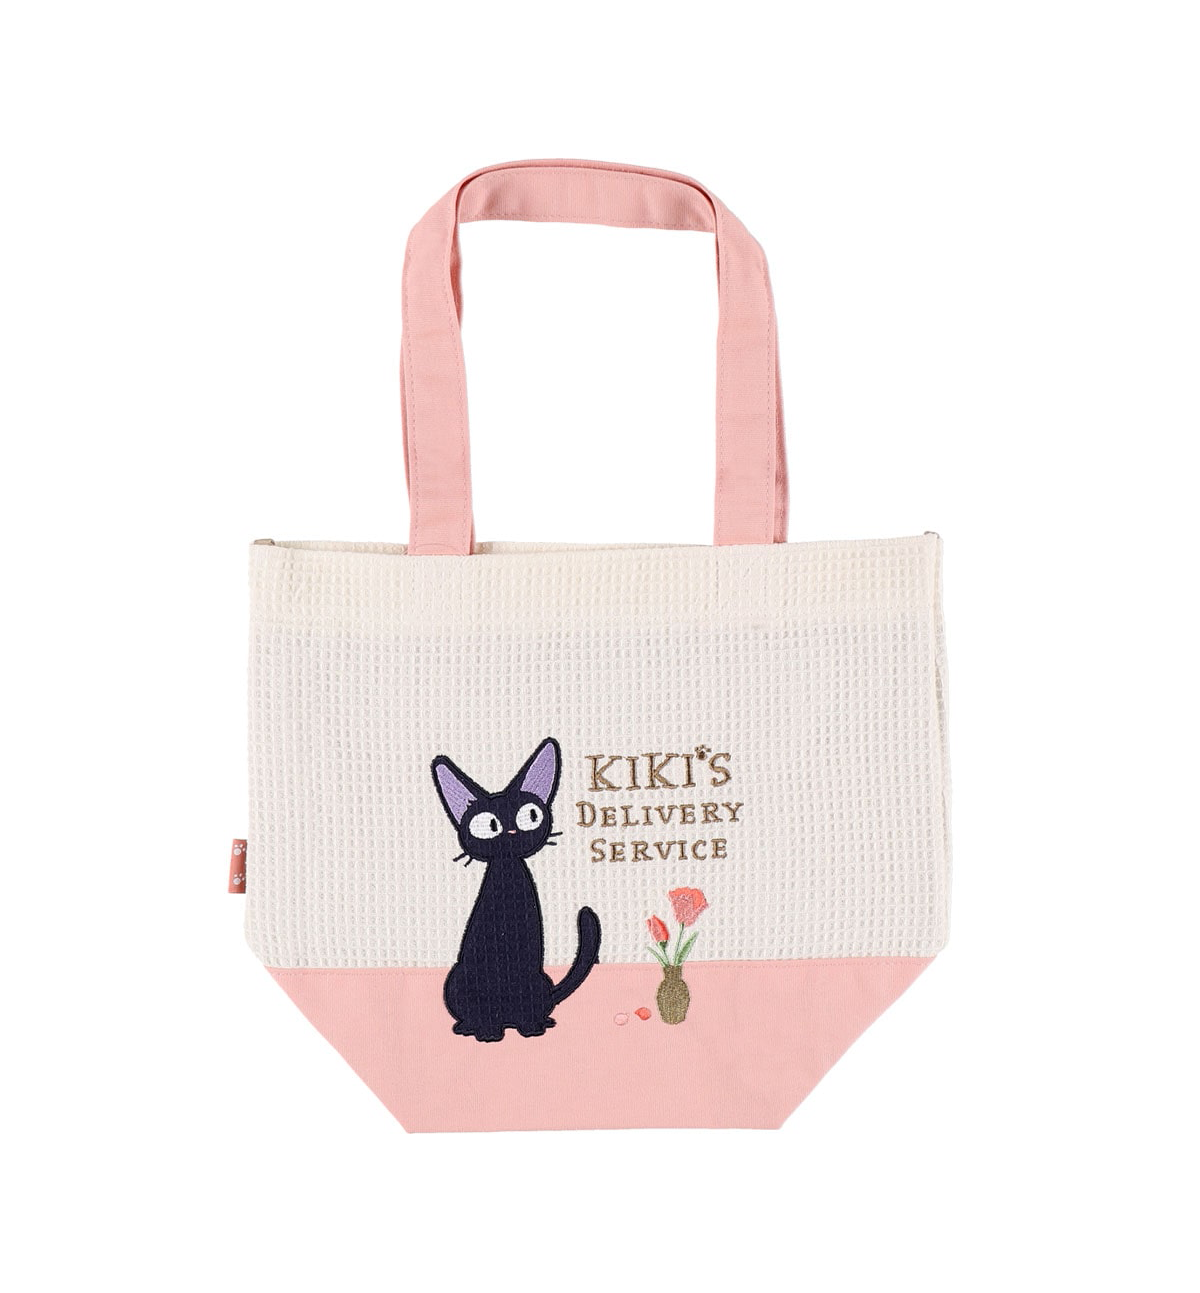 Kiki's Delivery Service Tote Bag [Waffle Jiji]